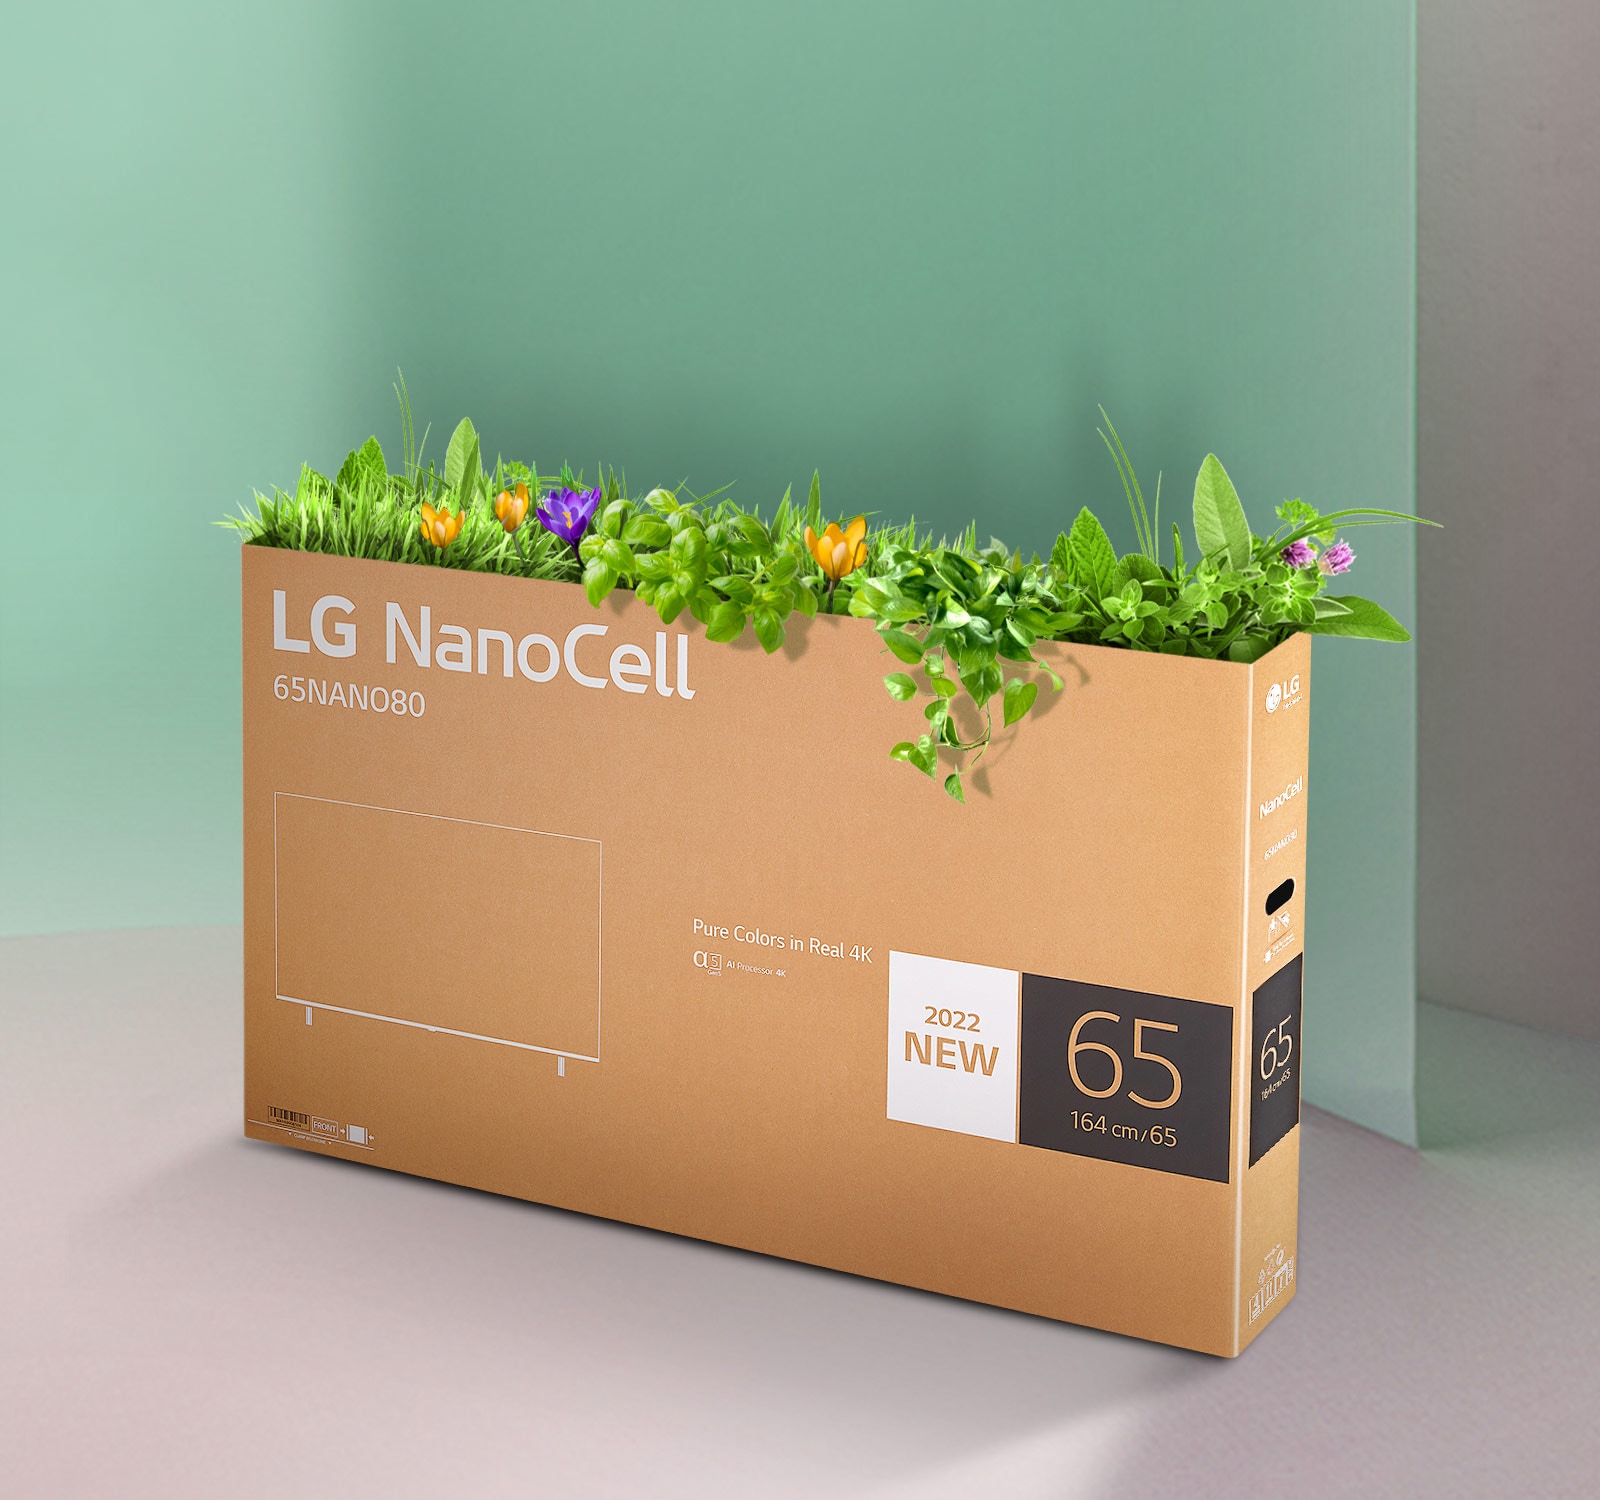 Der recyclingfähigen Karton des LG NanoCell TV mit Blumen und Pflanzen, die oben aus dem Karton heraussprießen.